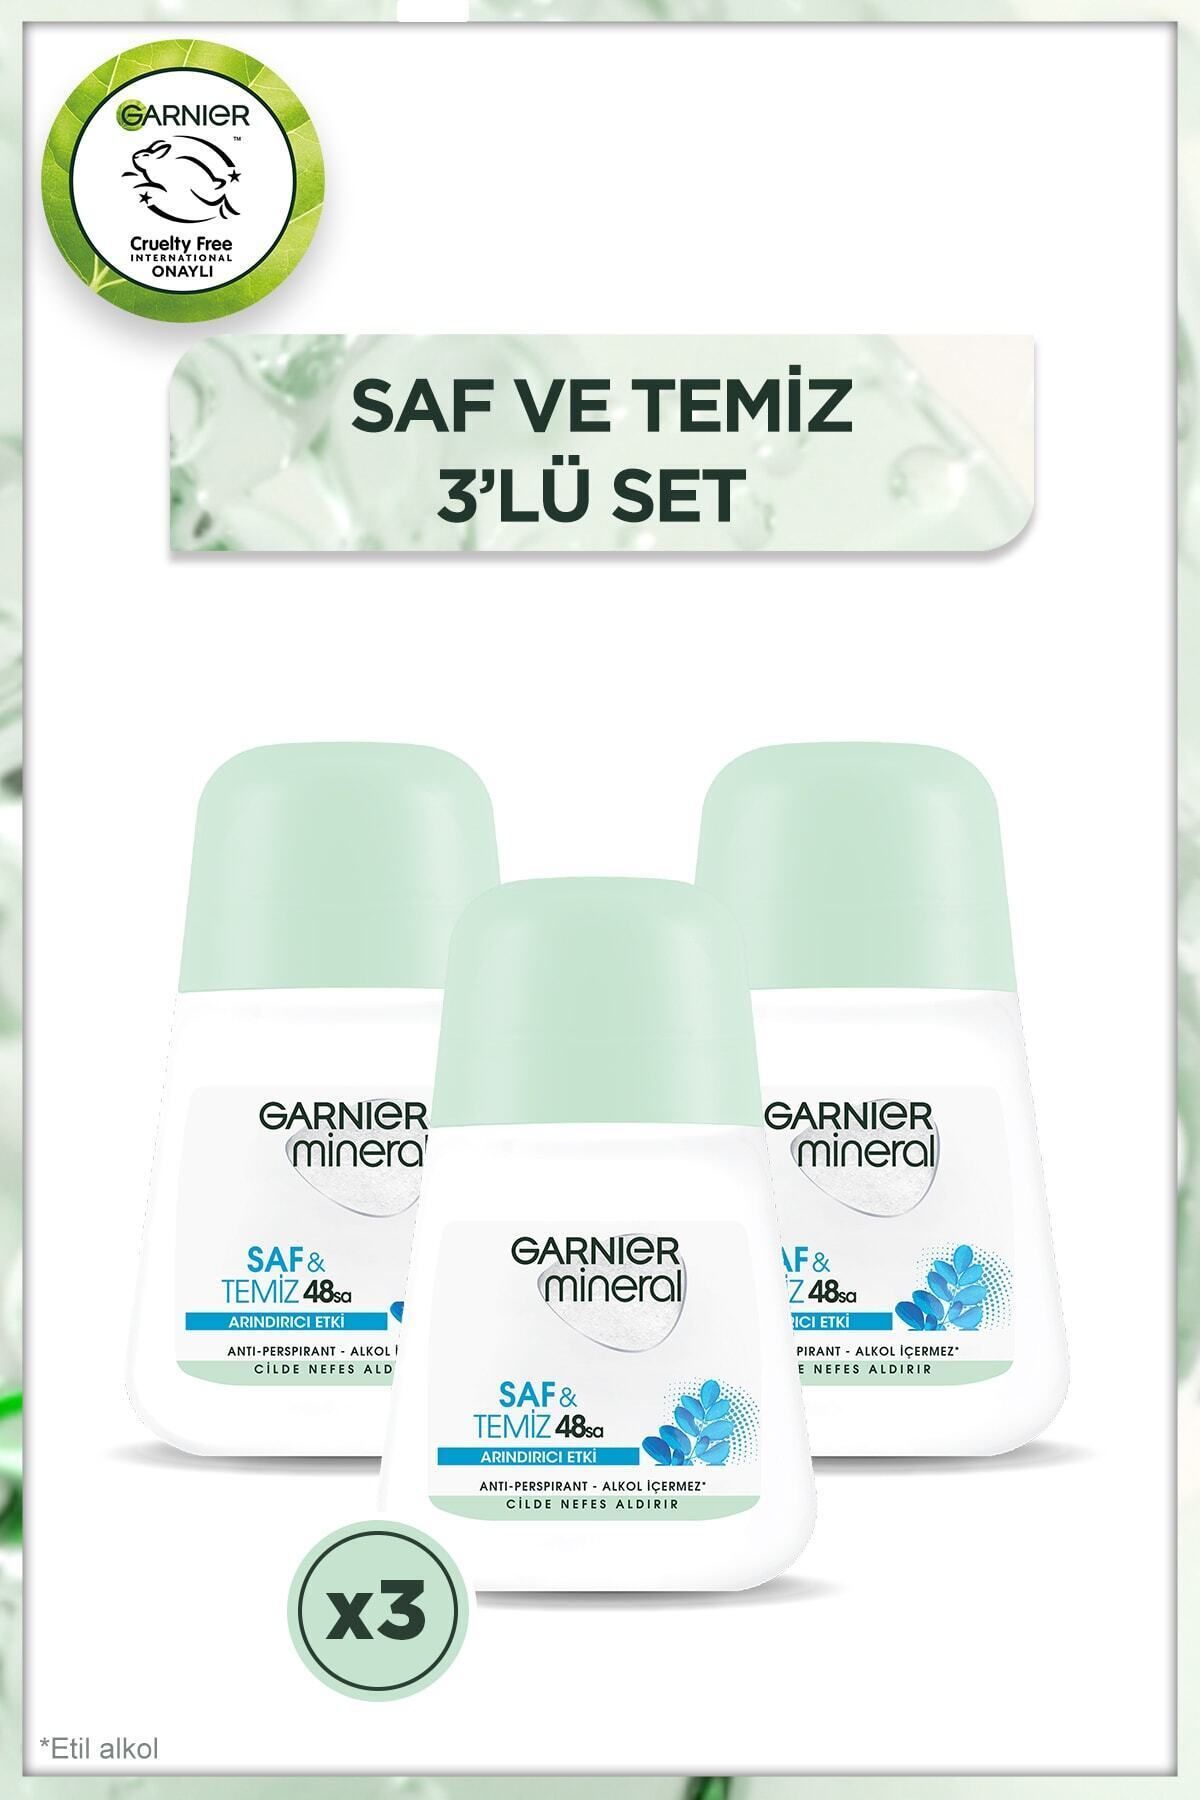 Garnier Mineral Saf&Temiz Roll-On Deodorant 3'lü Set